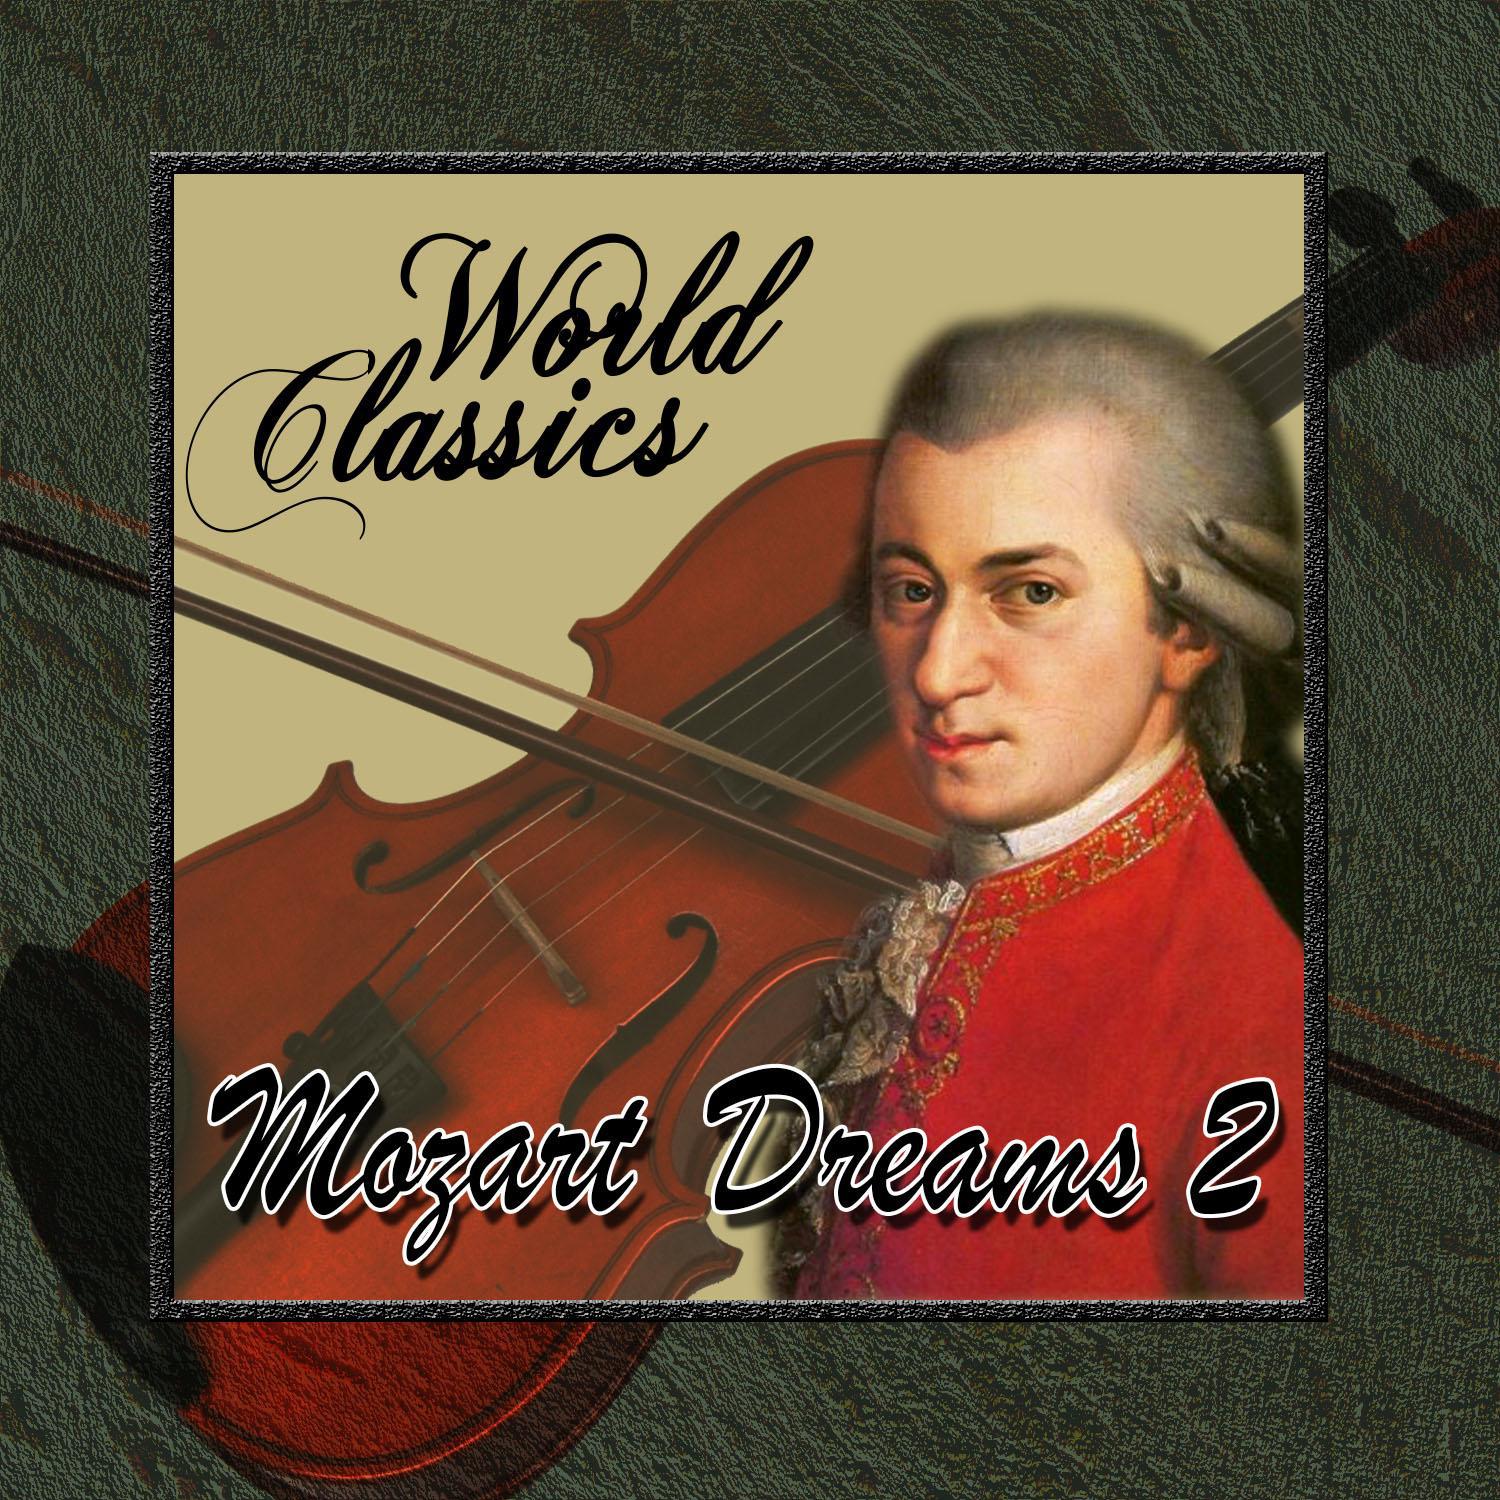 World Classics: Mozart Dreams 2